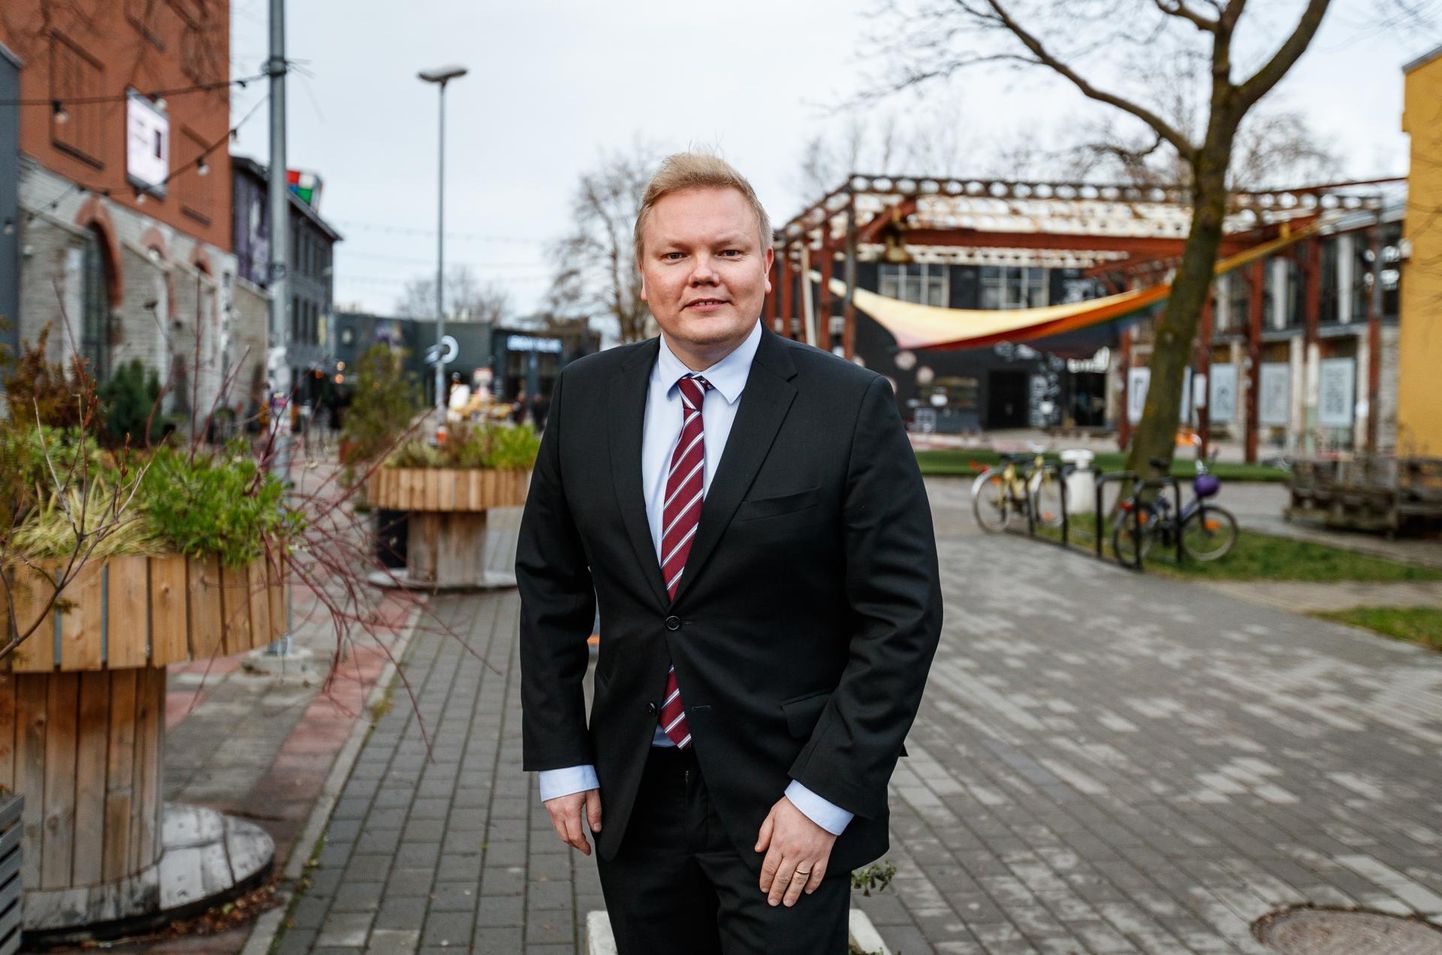 Soome teadus- ja kultuuriminister Antti Kurvinen viibis läinud neljapäeval Tallinnas ja kinnitas, et soomlased on koroonapassi valdavalt hästi omaks võtnud.